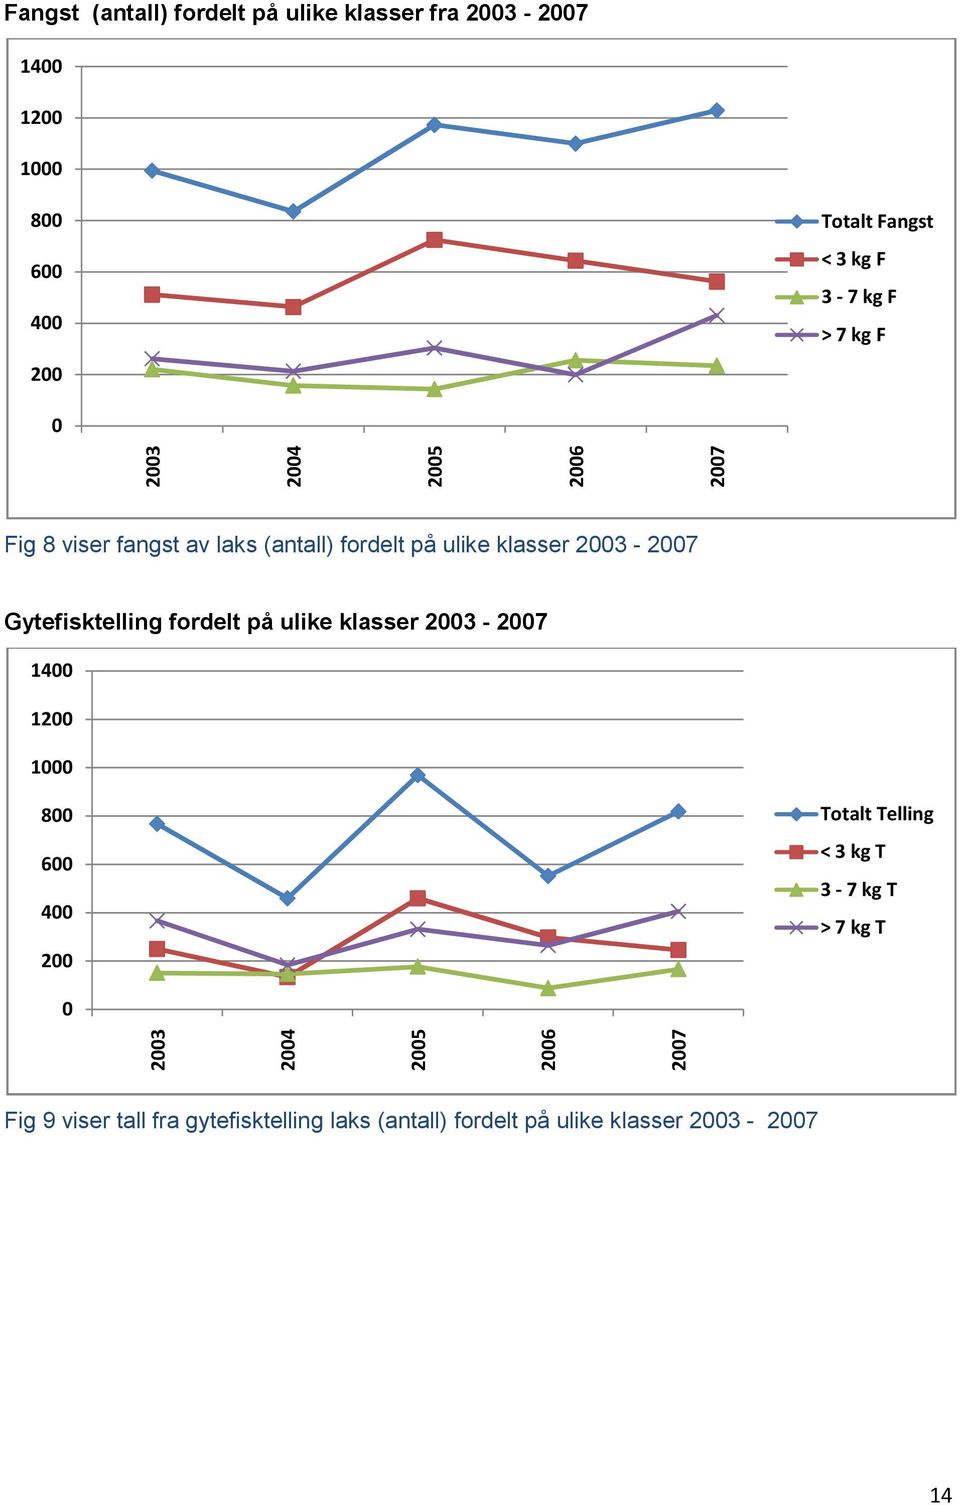 Gytefisktelling fordelt på ulike klasser 2003-2007 1400 1200 1000 800 600 400 200 Totalt Telling < 3 kg T 3-7 kg T